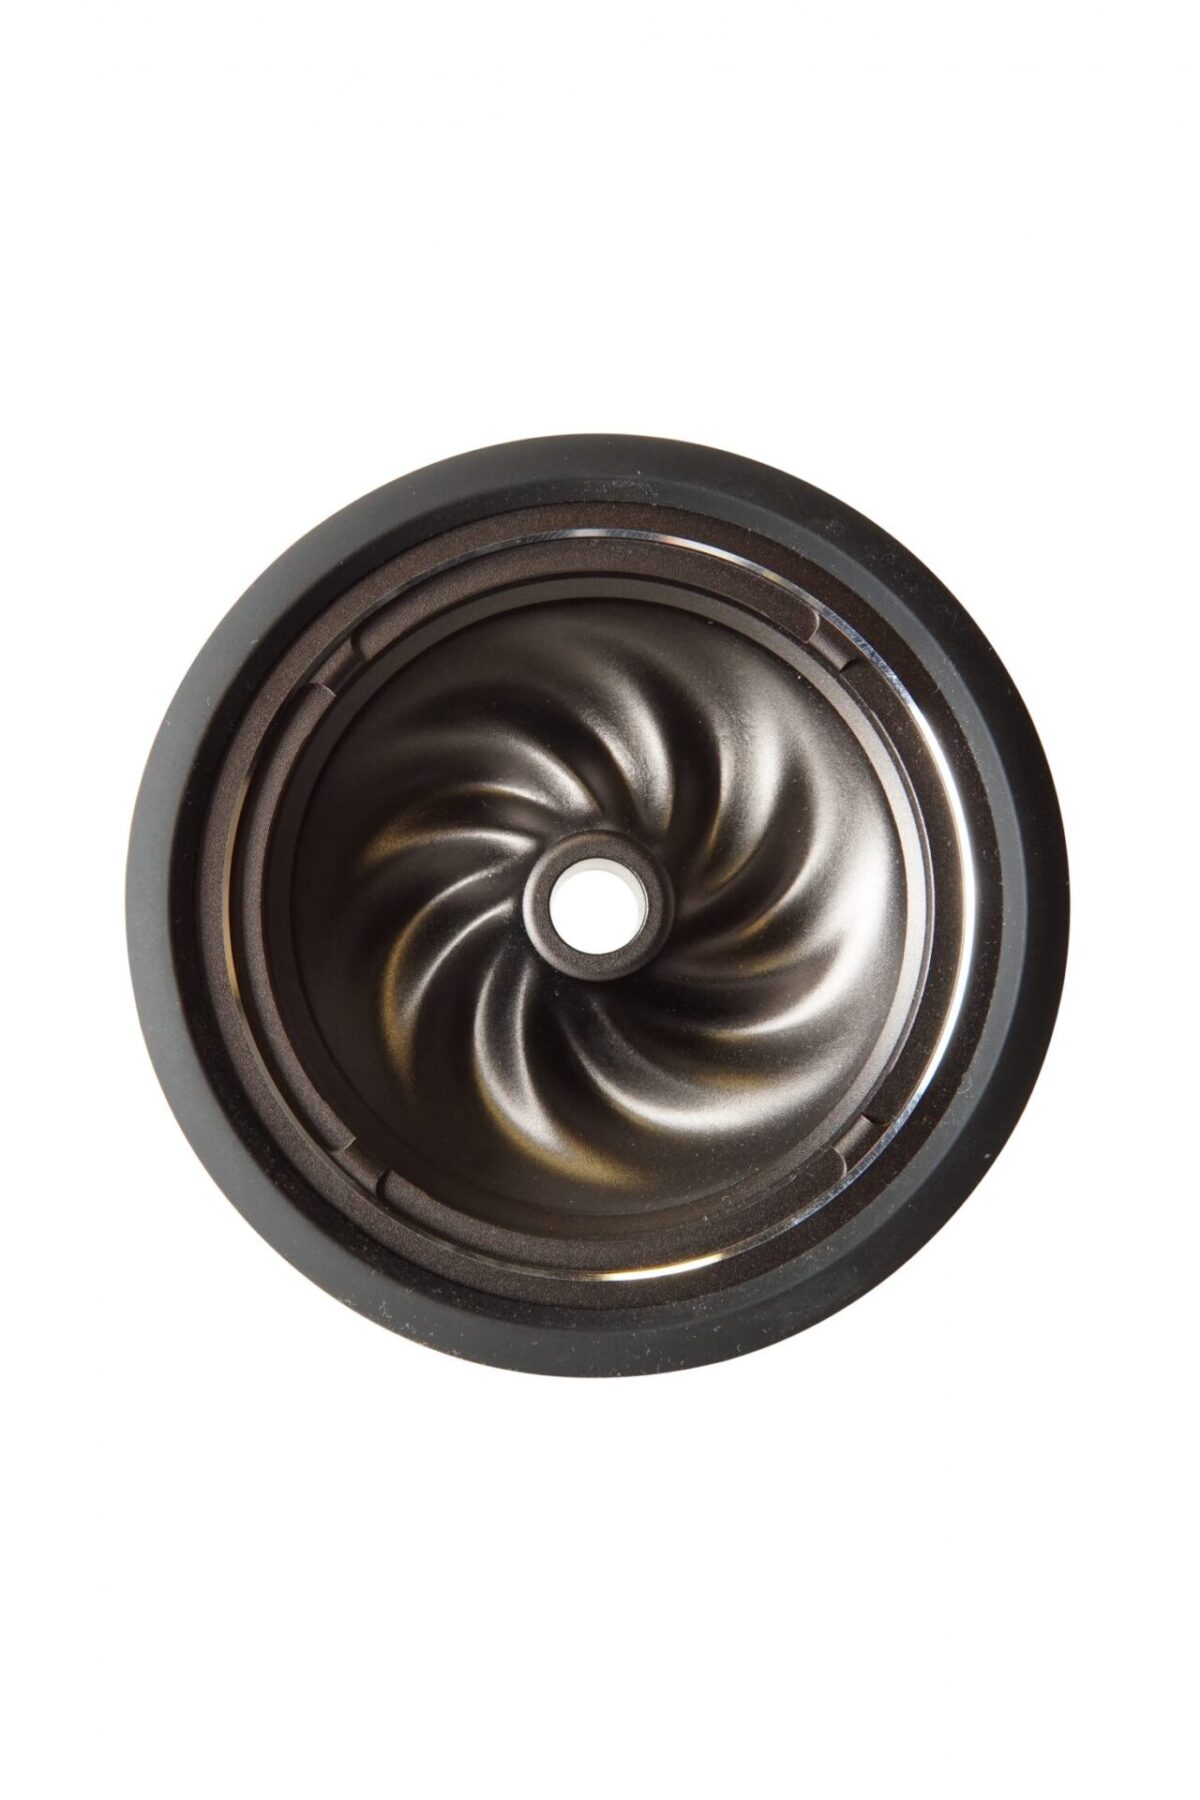 Kaloud Aluminum Samsaris Bowl For Lotus Ii